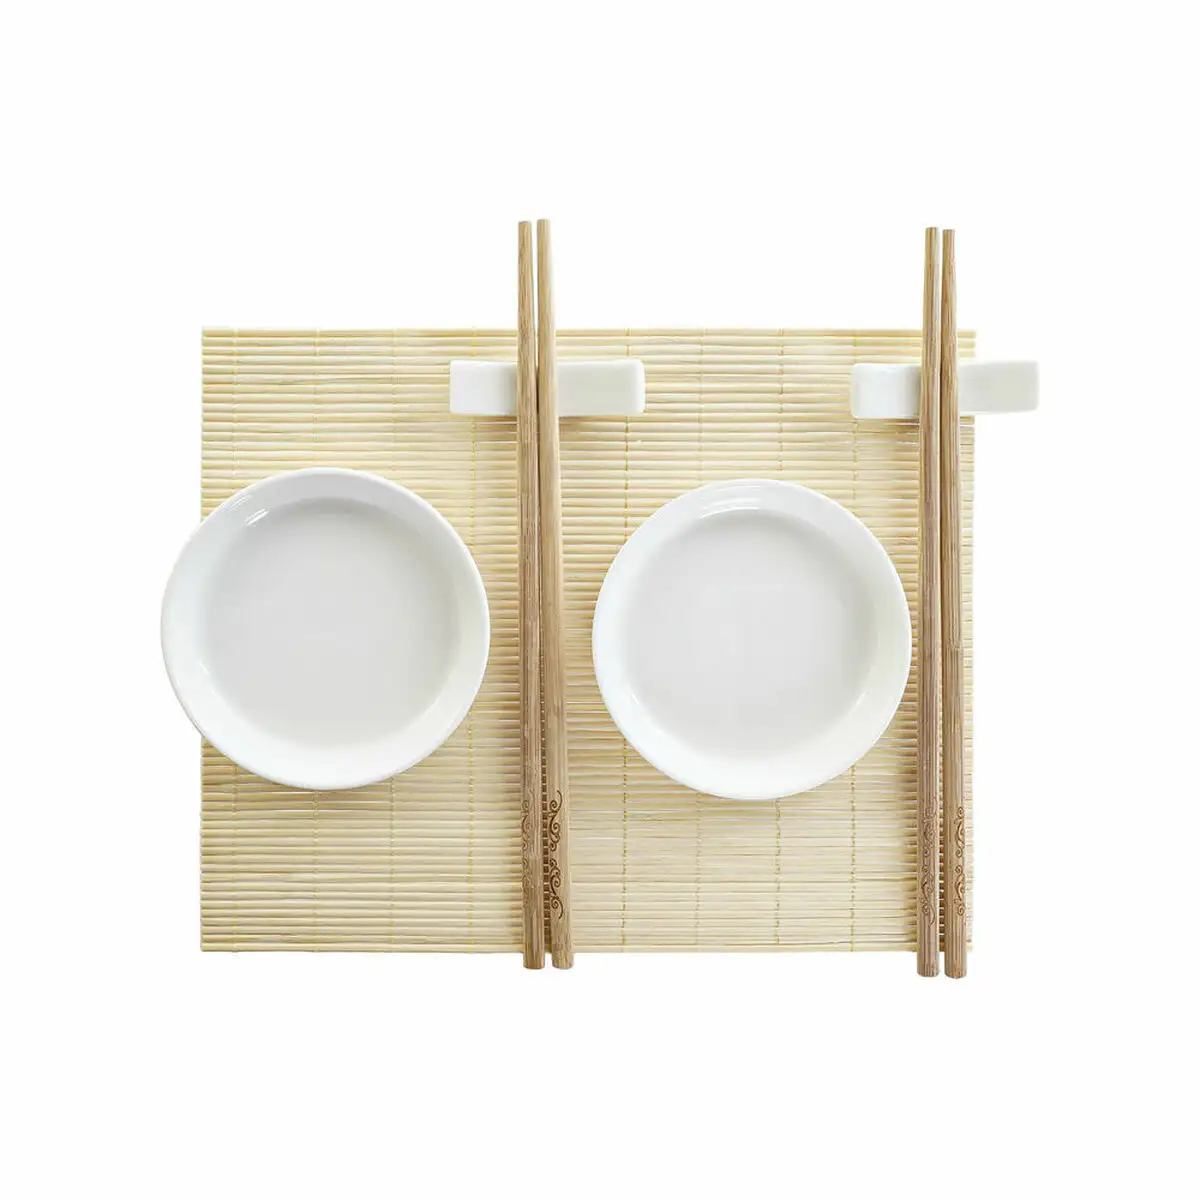 Set de sushi dkd home decor bambou plastique gres blanc naturel oriental 28 8 x 19 8 x 3 cm 7 pieces 28 8 x 19 8 x 3 cm _7141. DIAYTAR SENEGAL - Là où Chaque Produit a son Propre Éclat. Explorez notre boutique en ligne et trouvez des articles qui ajoutent de la brillance à votre quotidien.